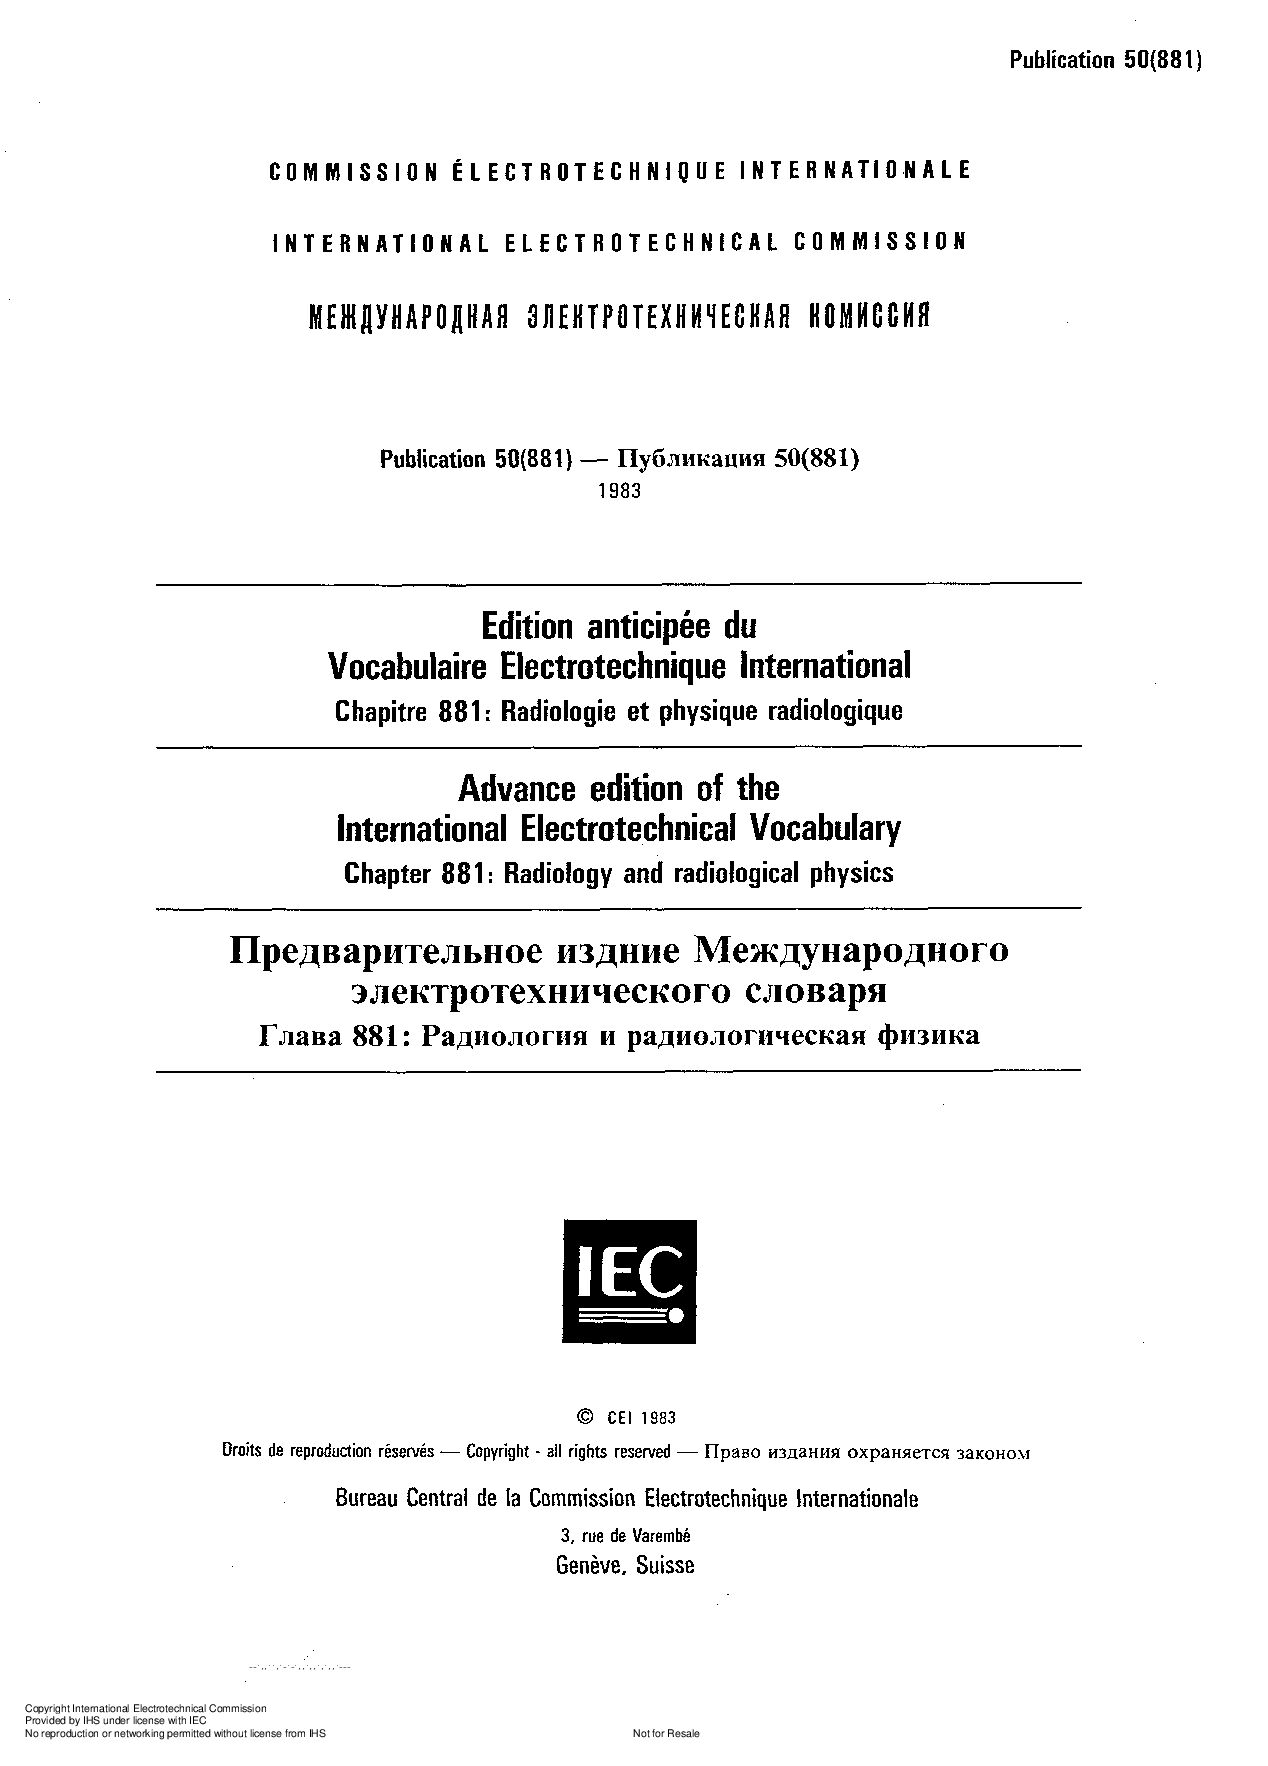 IEC 60050-881:1983